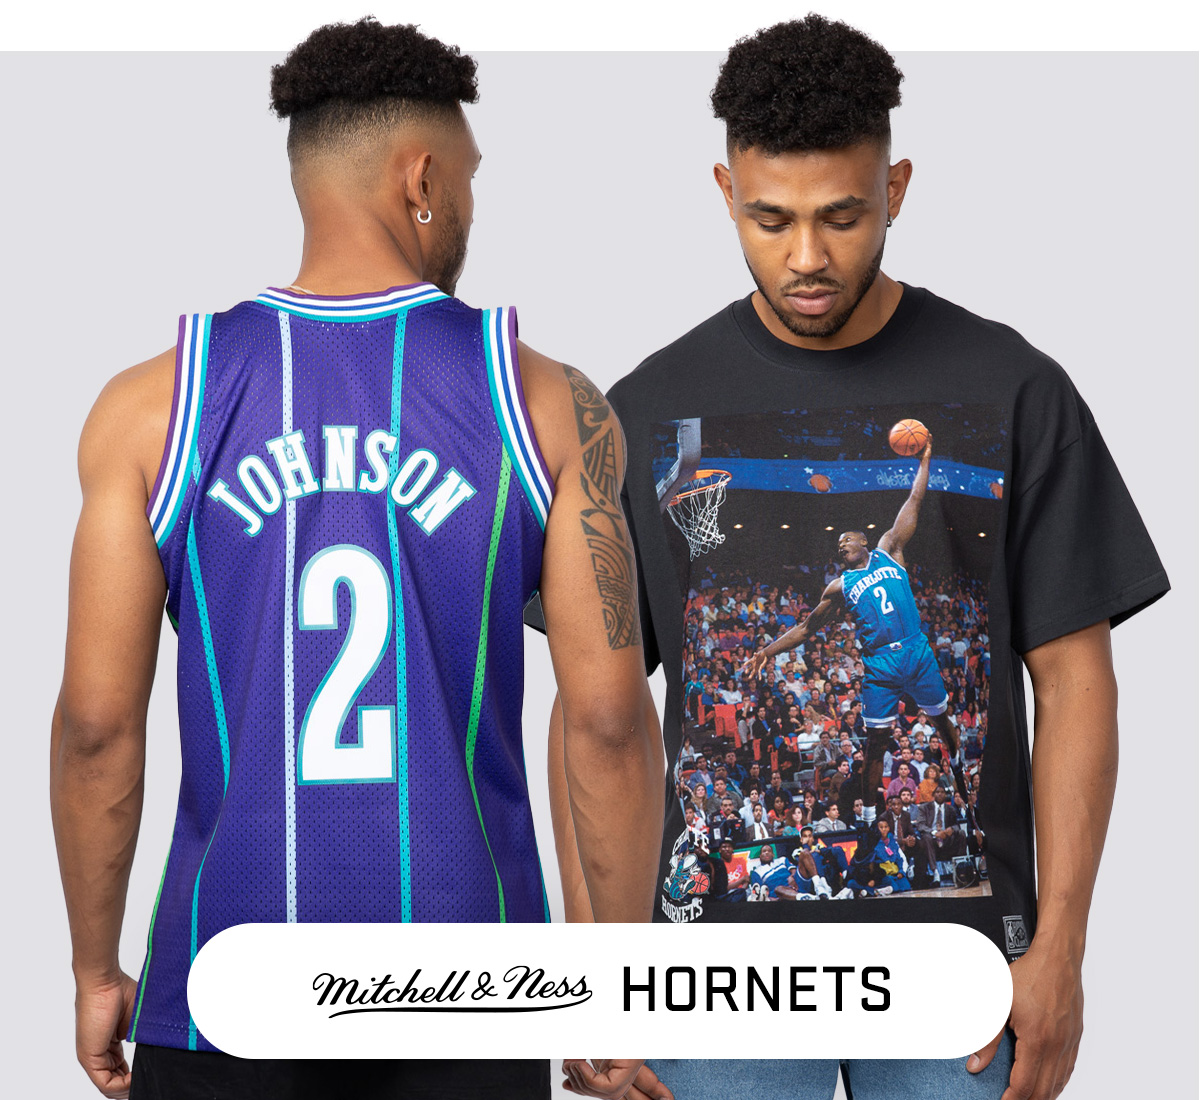 Buy Official Charlotte Hornets Jerseys & Merchandise Australia